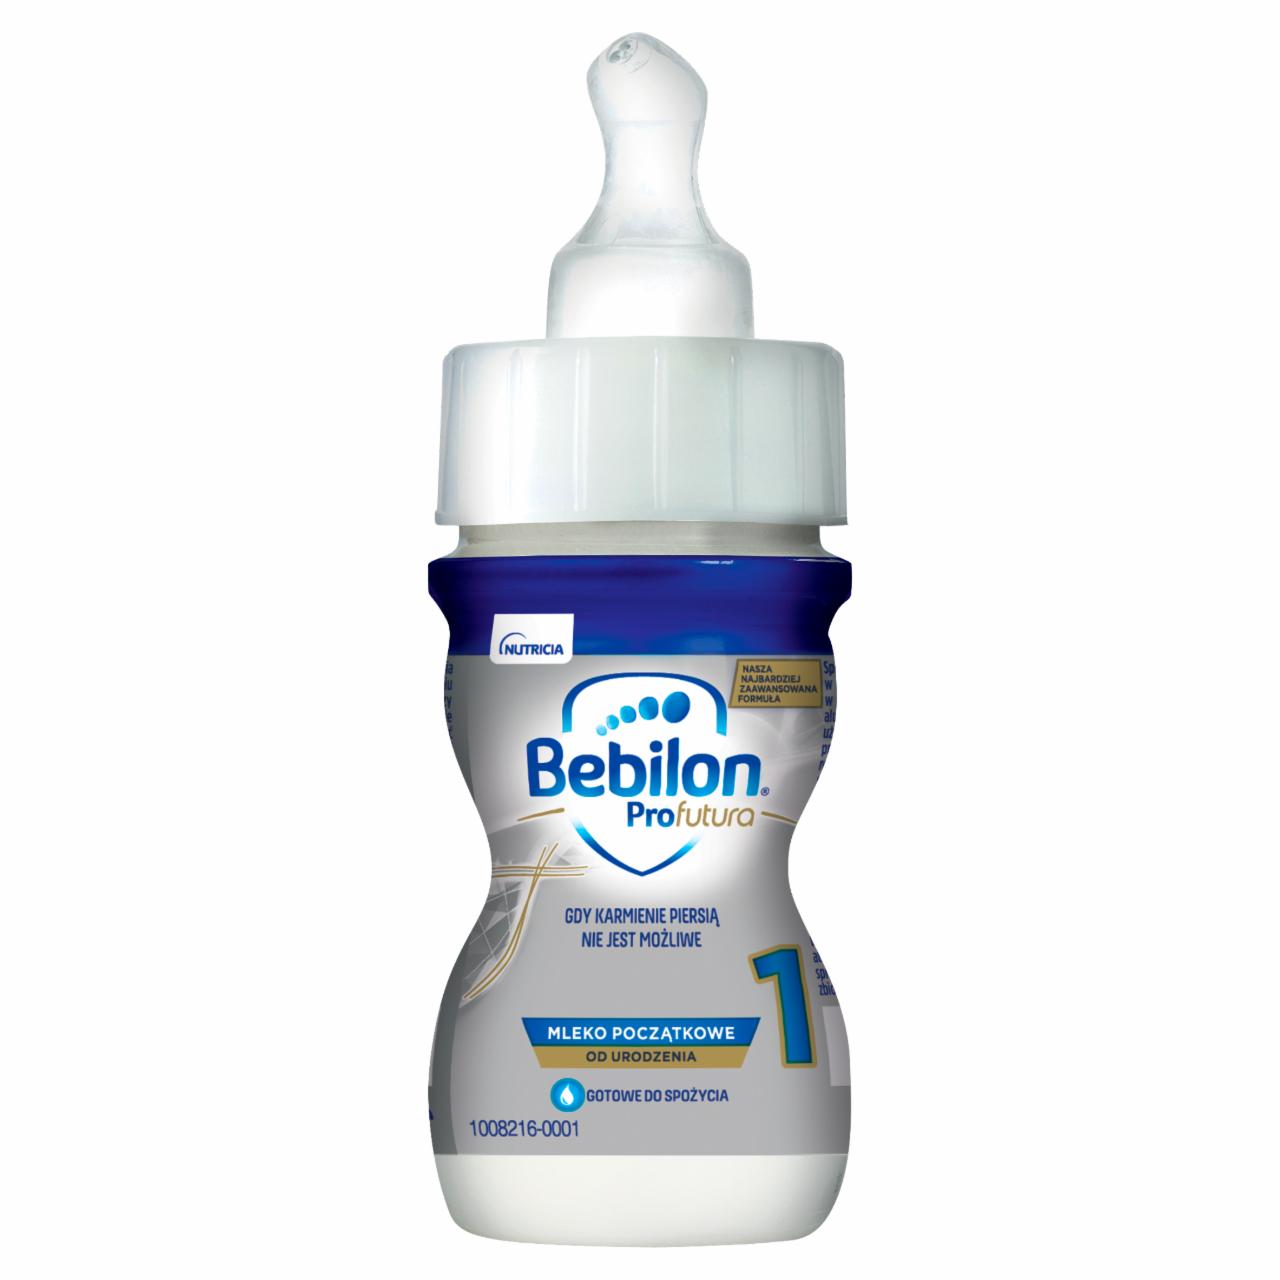 Zdjęcia - Bebilon Profutura 1 Mleko początkowe od urodzenia 70 ml